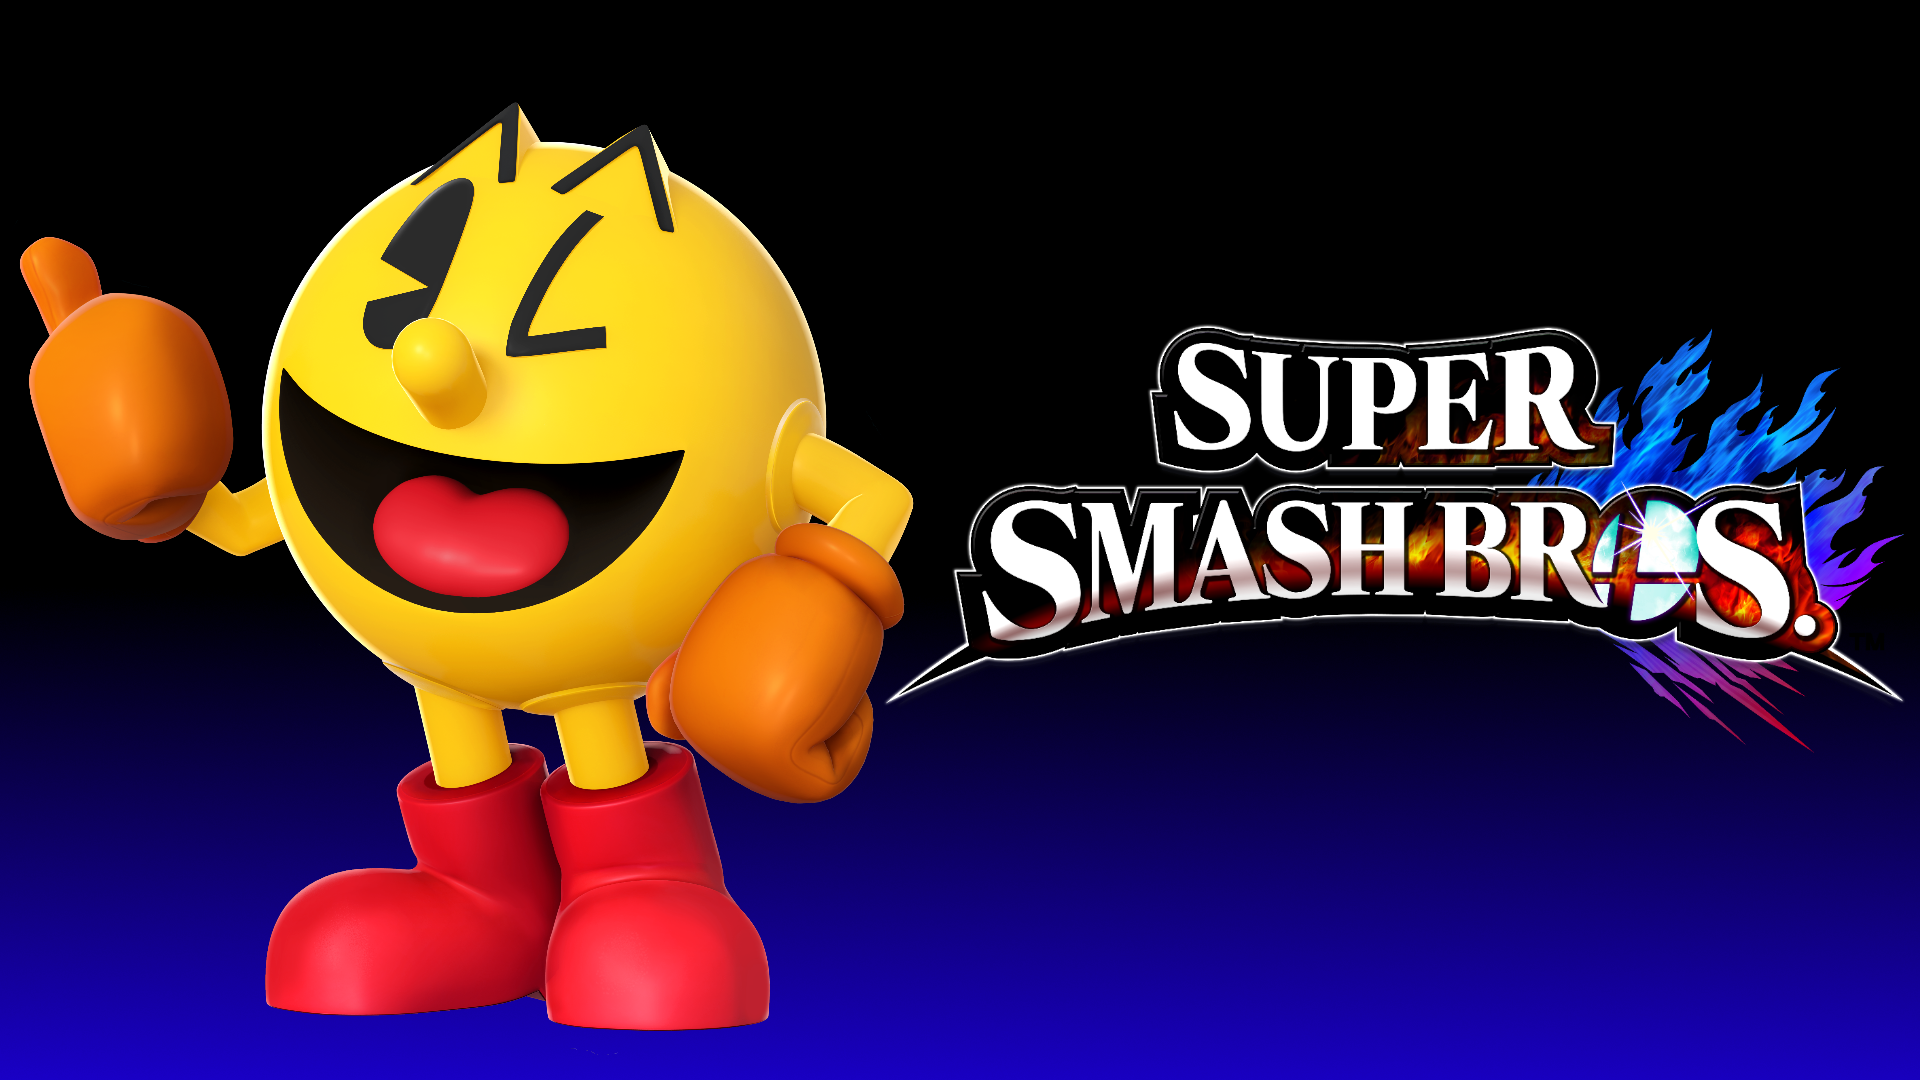 Pac-Man Smash Bros - wallpaper.